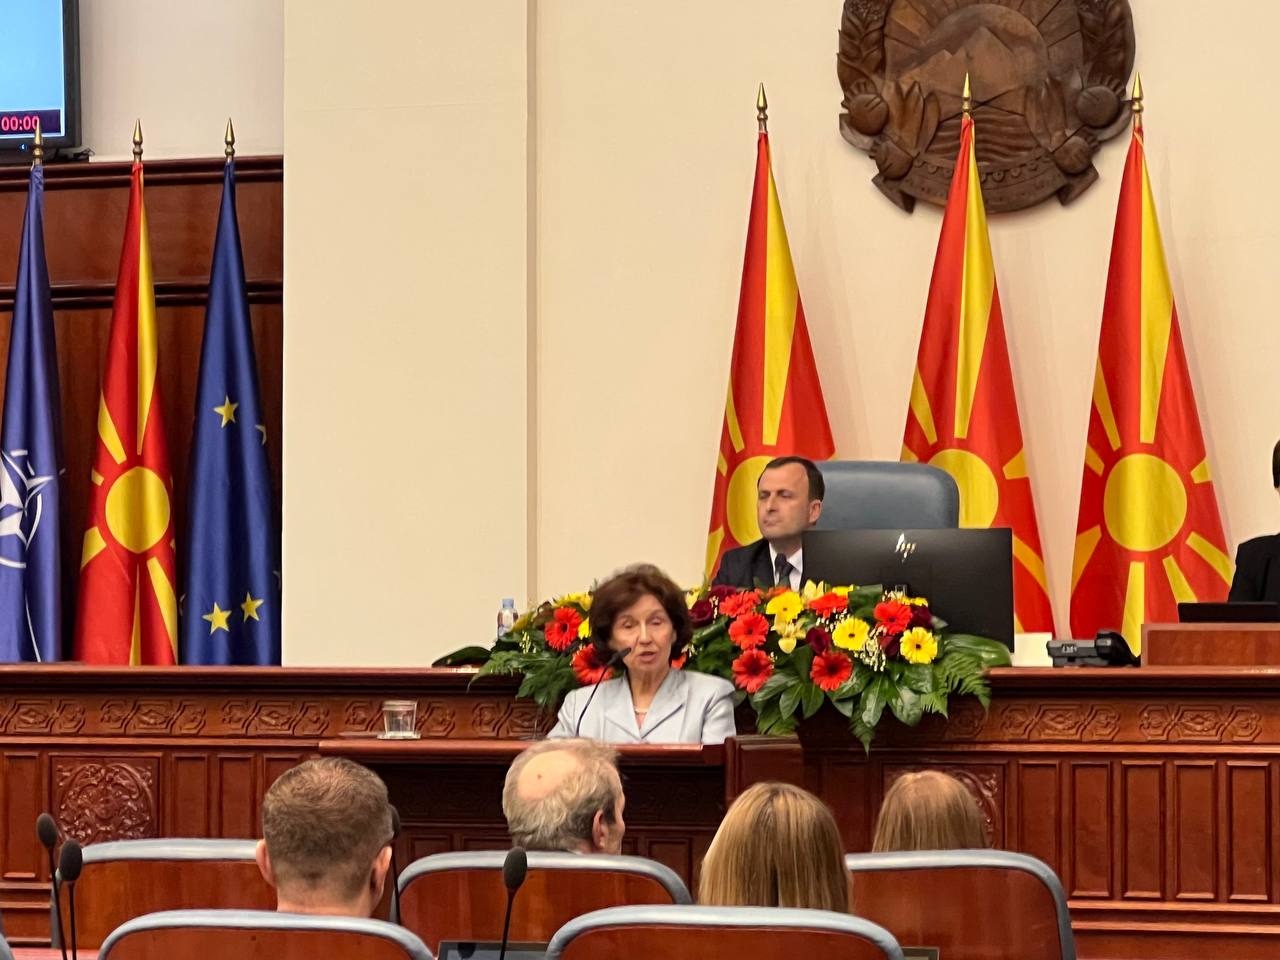 Πρόκληση από τη νέα πρόεδρο της Βόρειας Μακεδονίας: Ορκίστηκε λέγοντας τη χώρα «Μακεδονία»